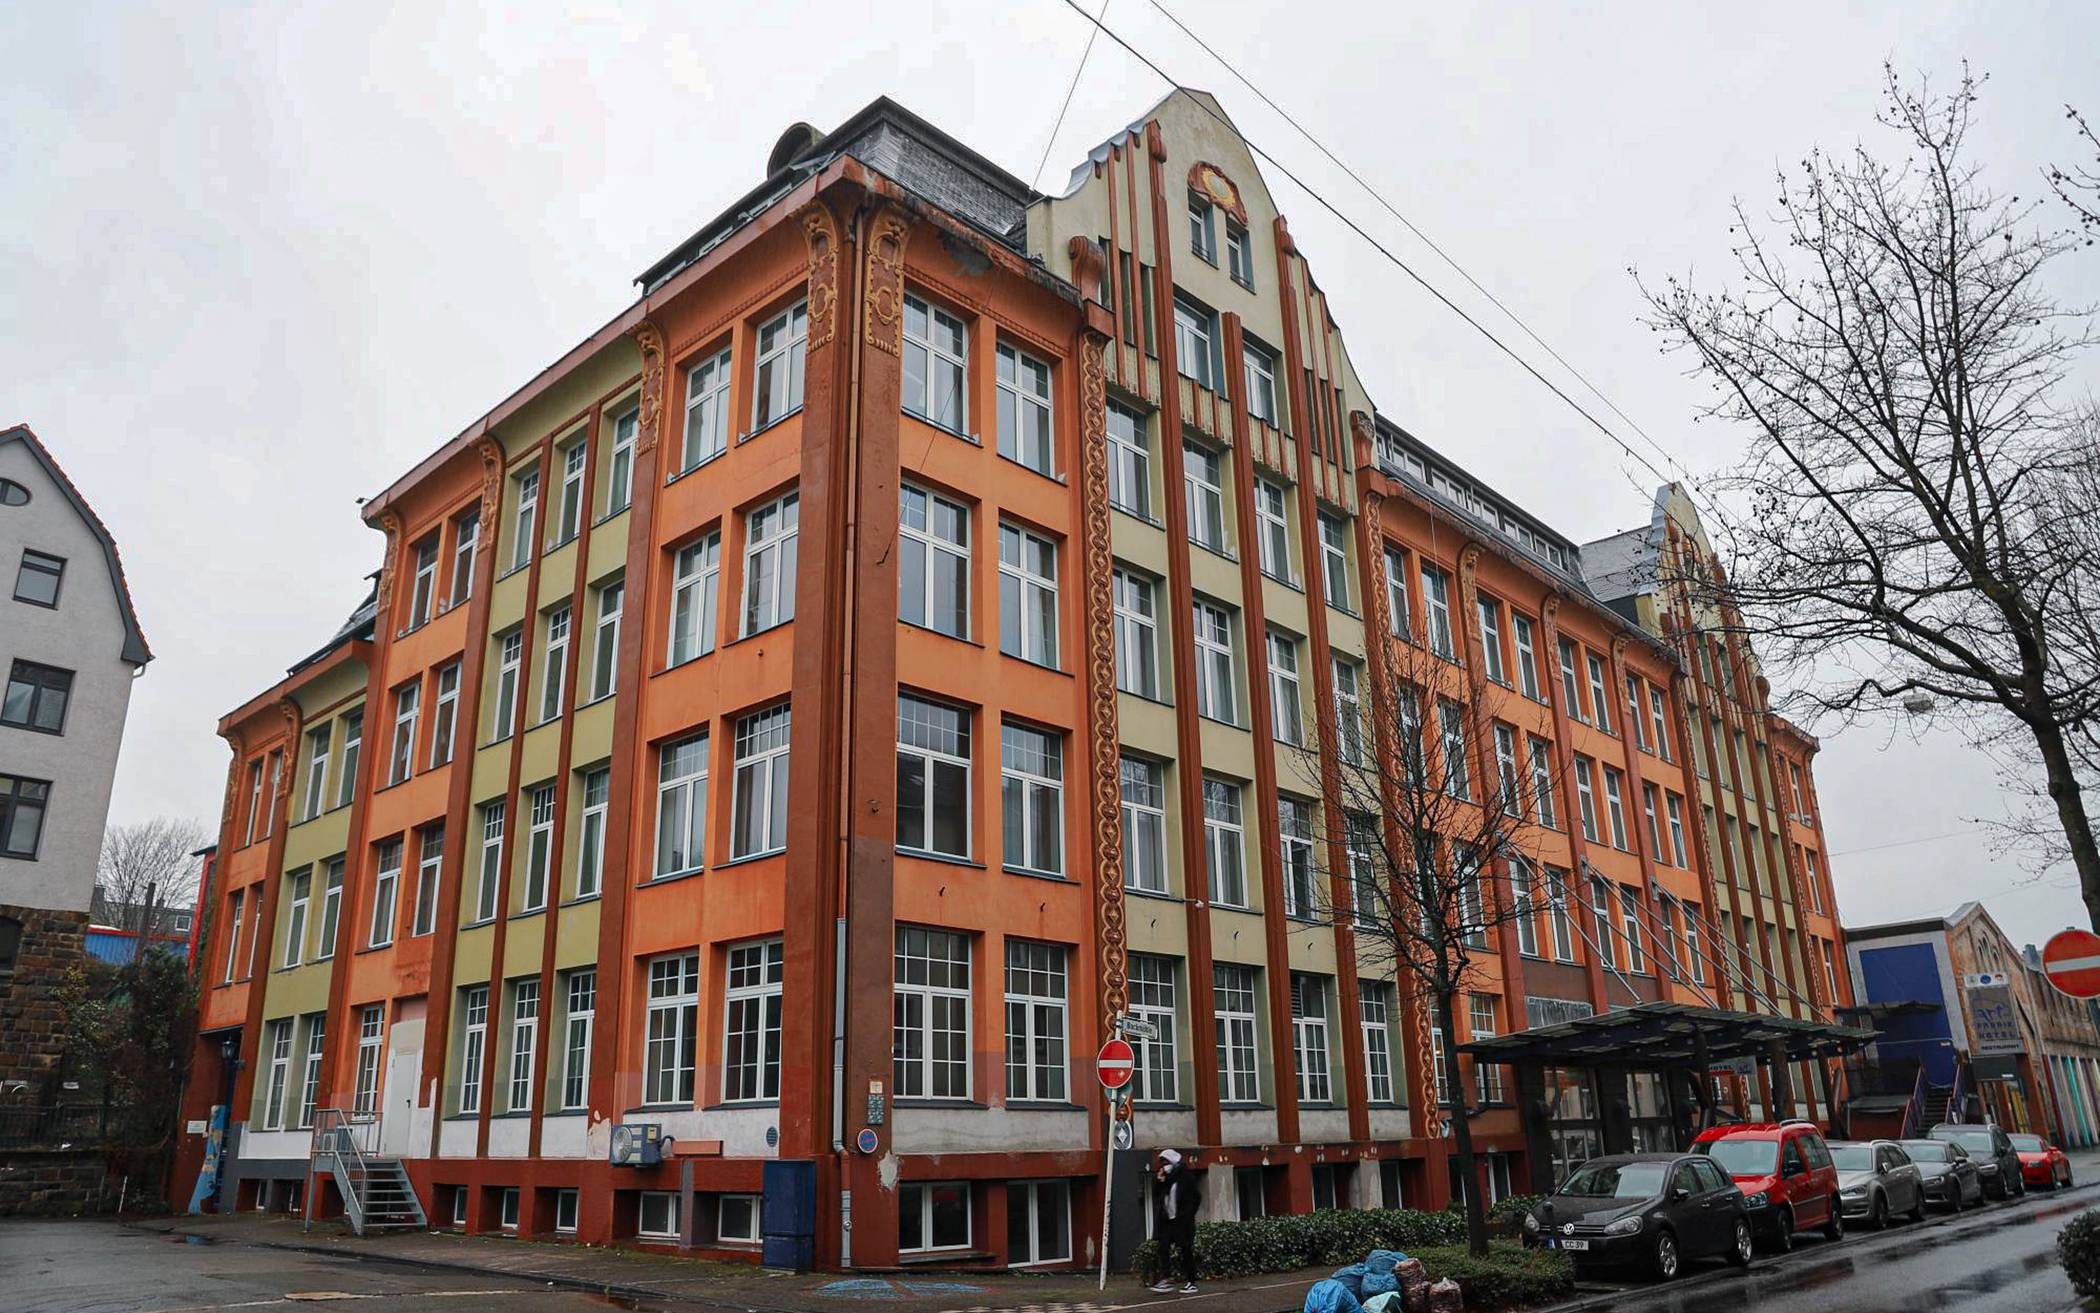  Beschlossen: Die siebte Gesamtschule soll an der Bockmühle auf dem Gelände des ehemaligen Art-Hotels gebaut werden. 